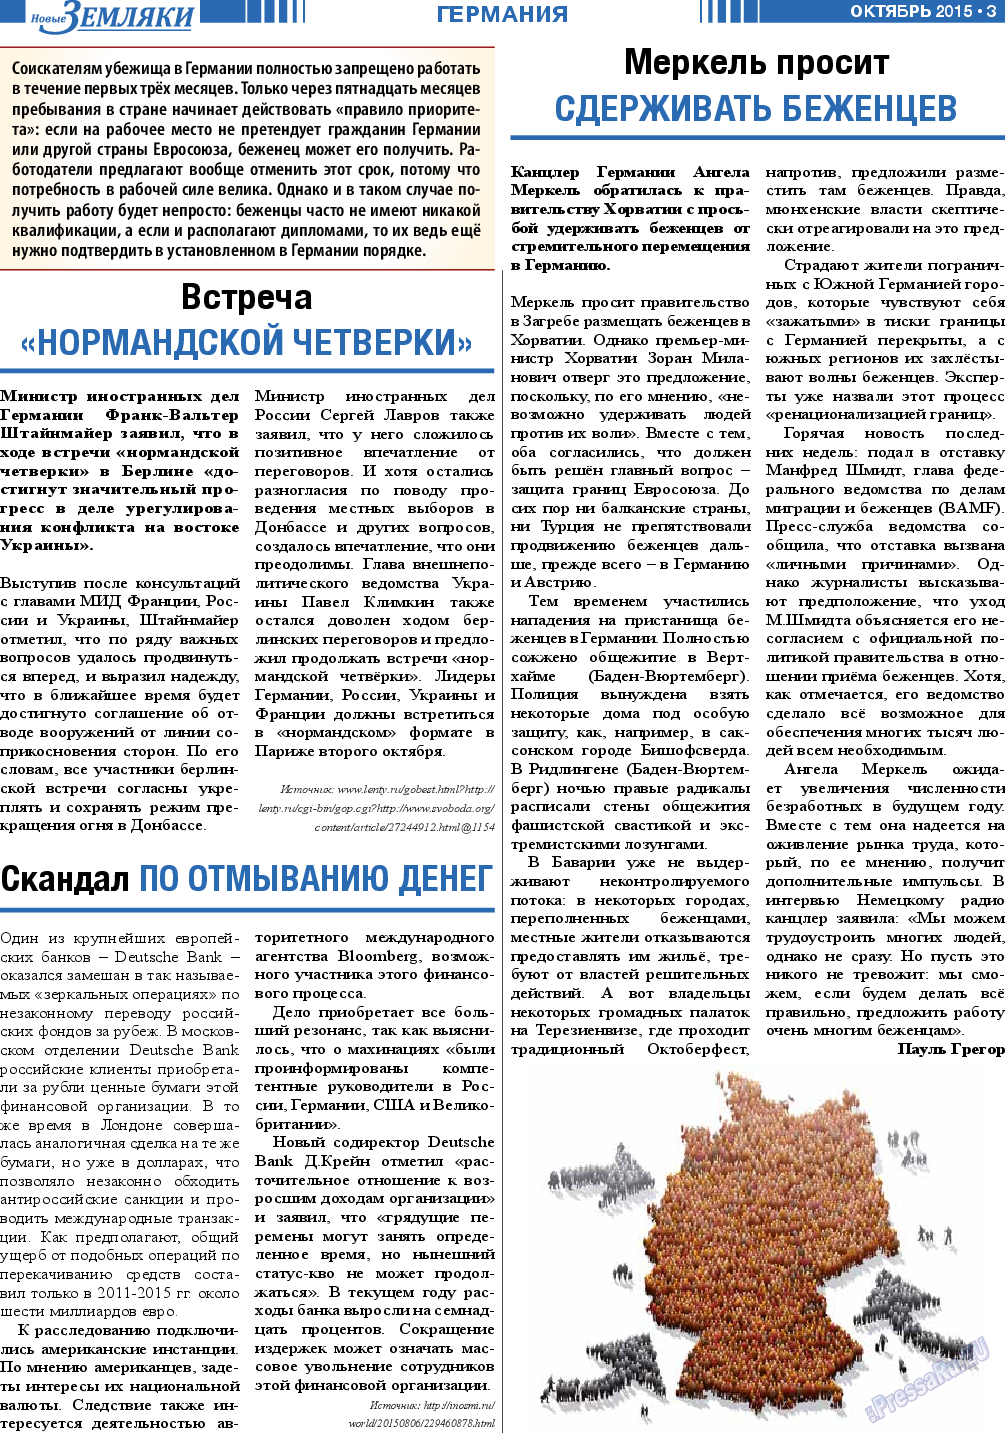 Новые Земляки, газета. 2015 №10 стр.3